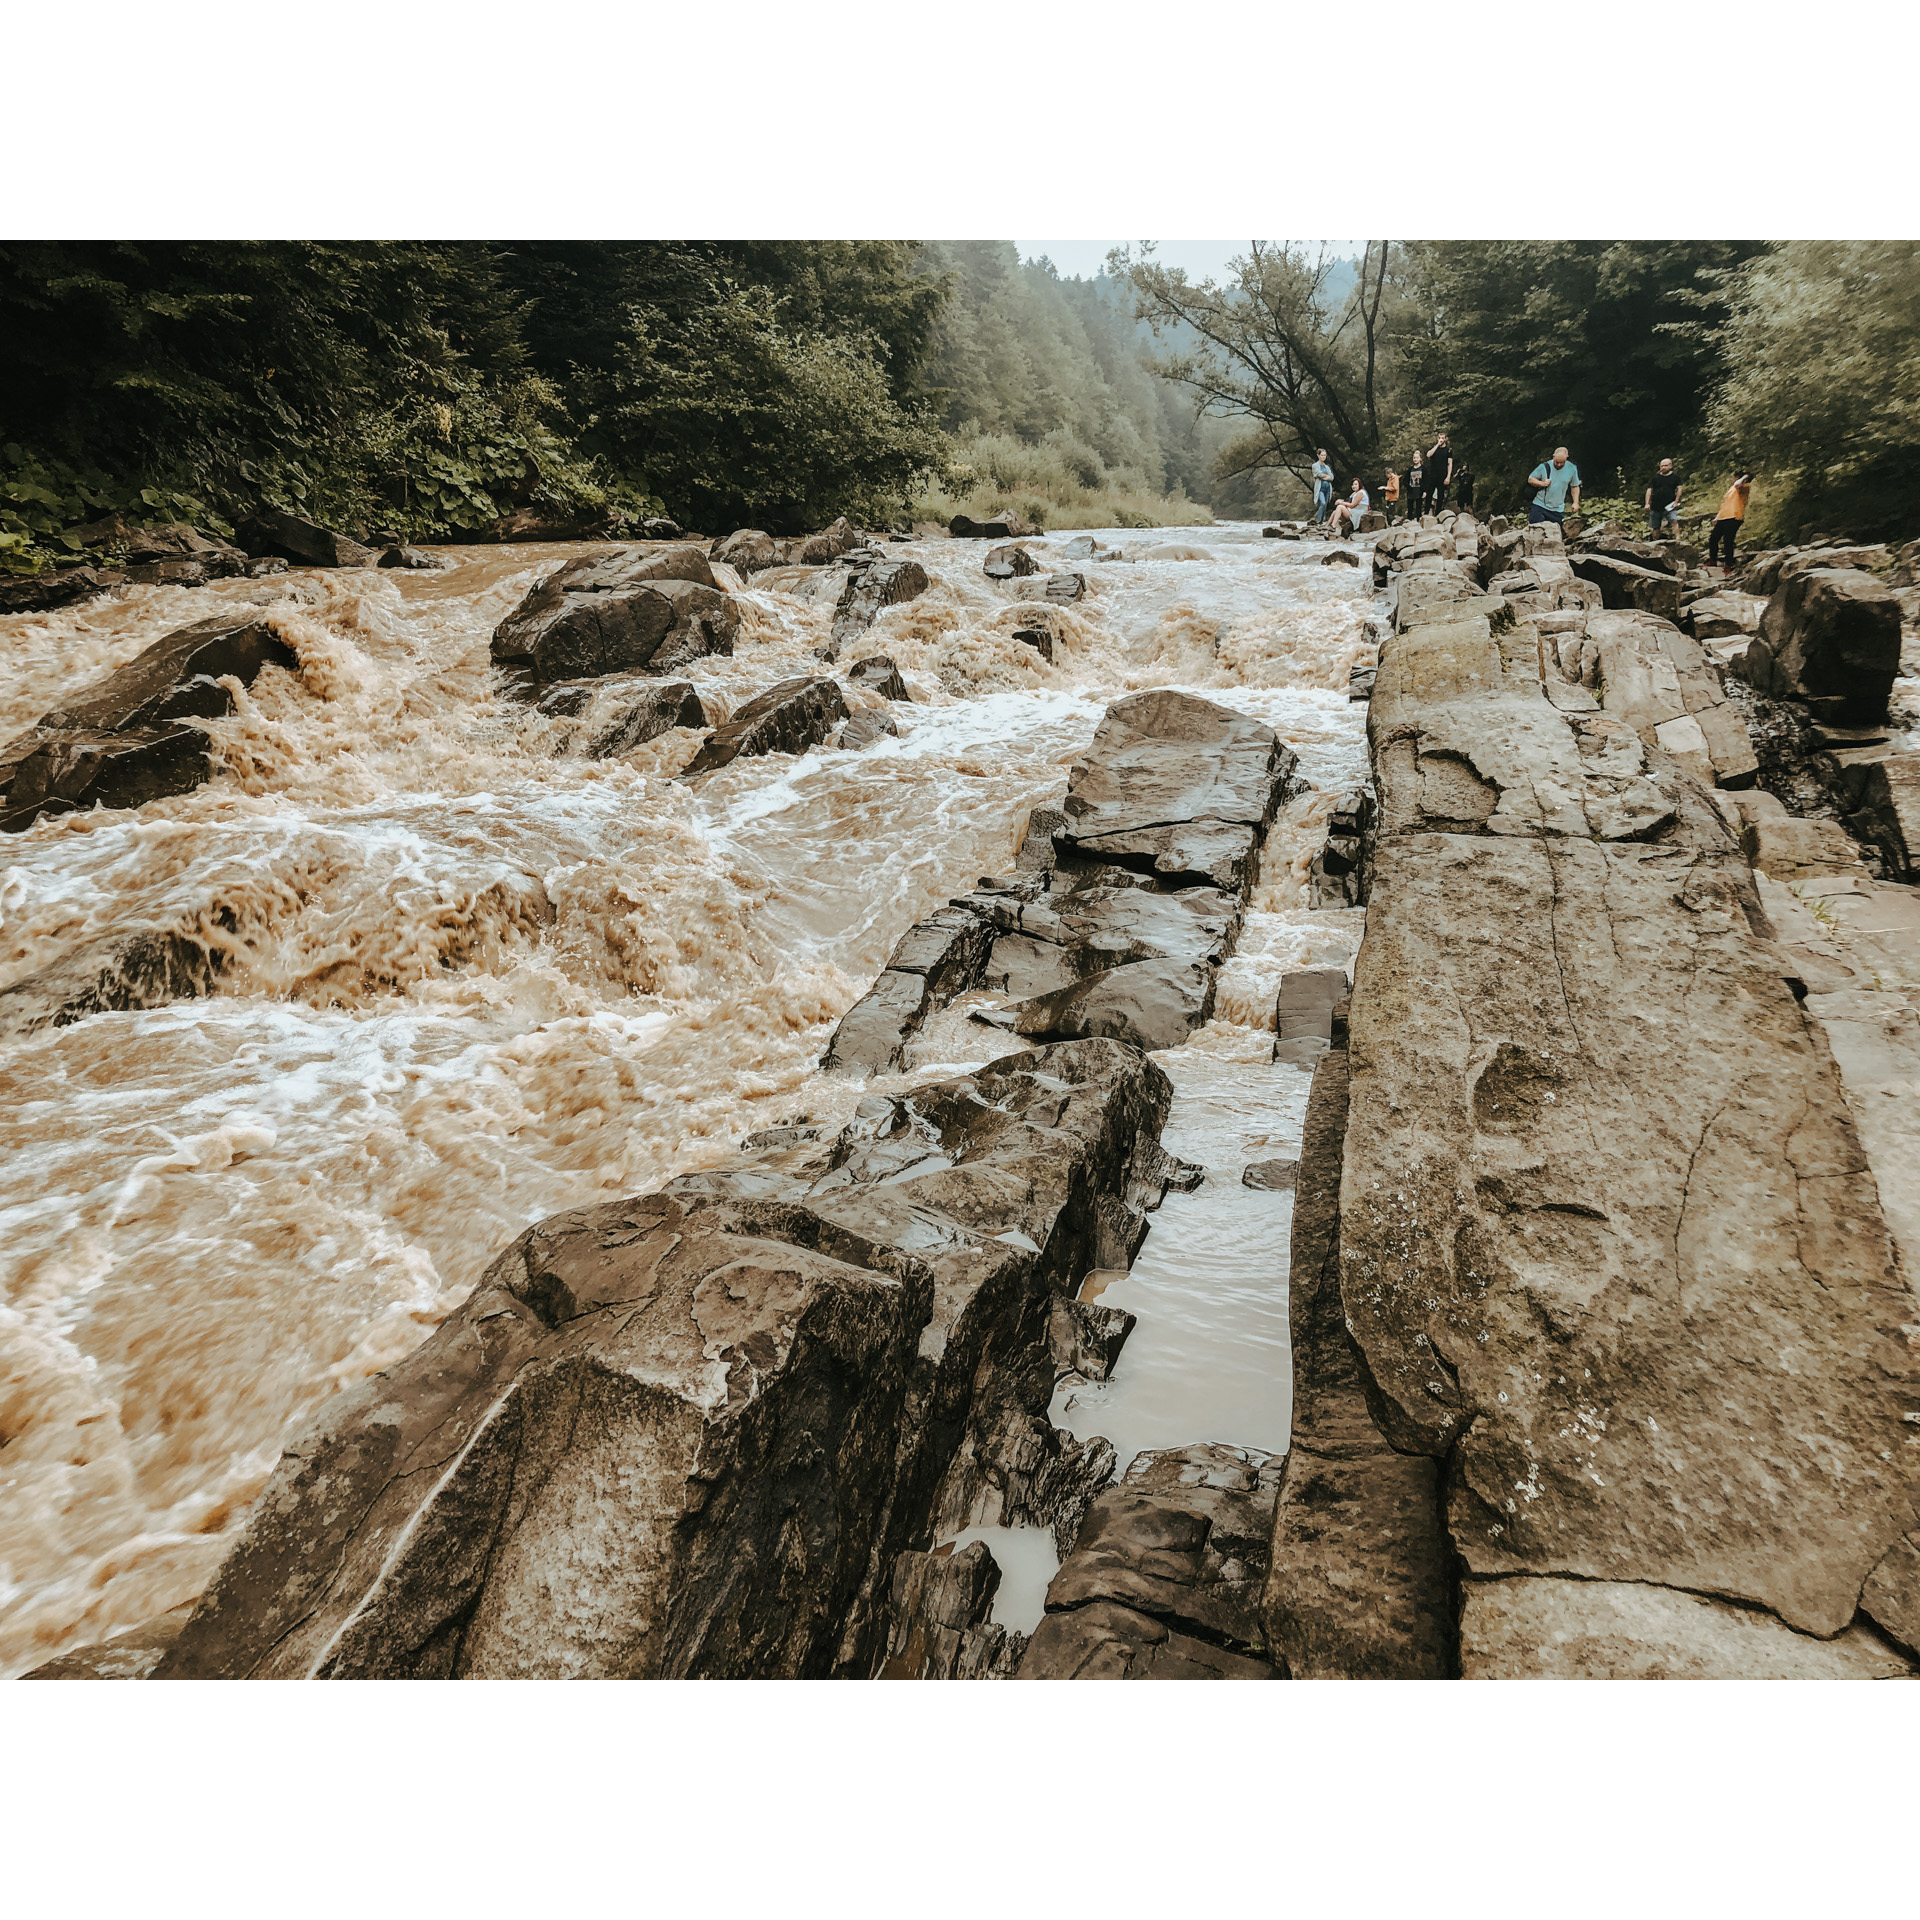 Wzburzony nurt rzeki uderzający o kamienie 